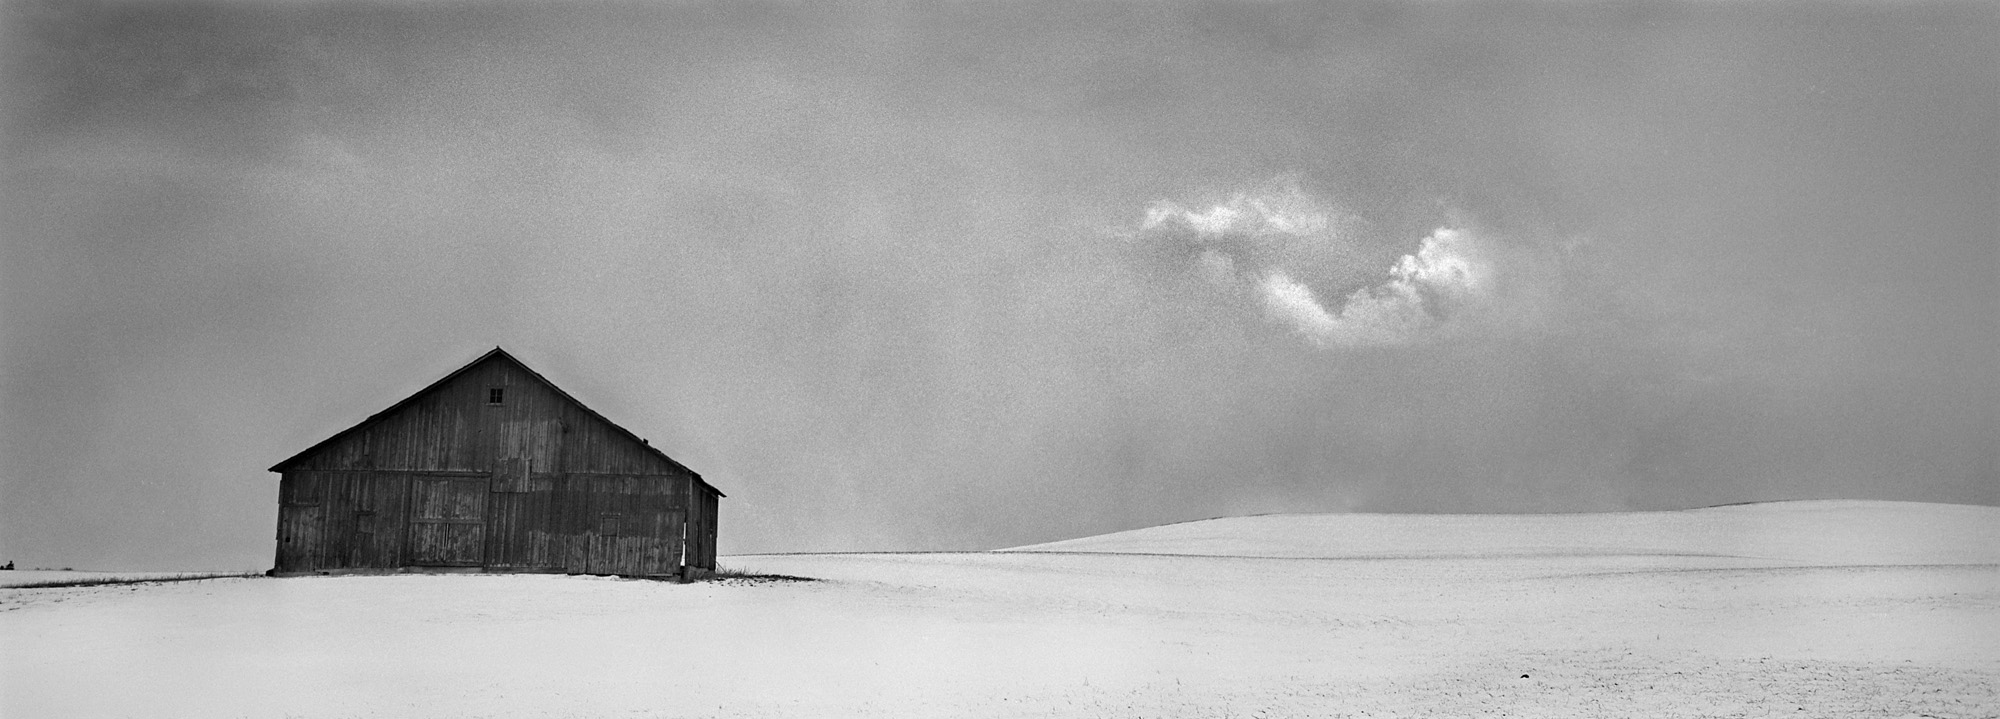 Barn, Snow, Cloud Keyhole, Palouse.jpg